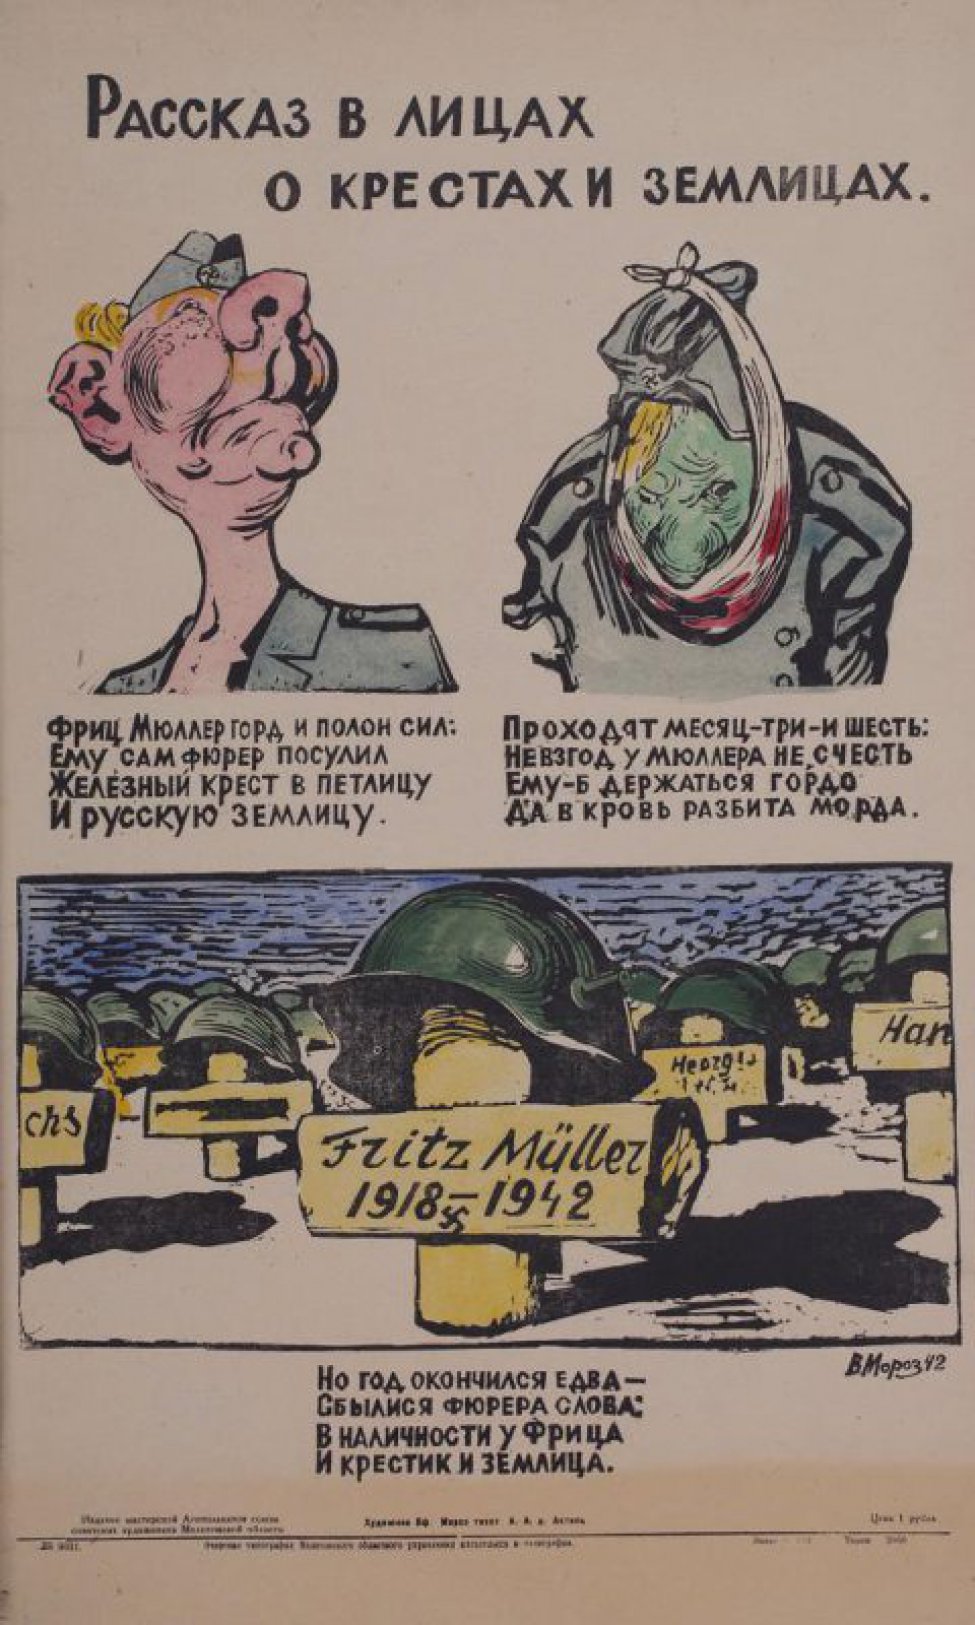 Помещно 3 рисунка: 1) фашист задравший голову; 2) немец в рваной одежде и с перевязанной щекой; 3) немецкое кладбище с касками на крестах.